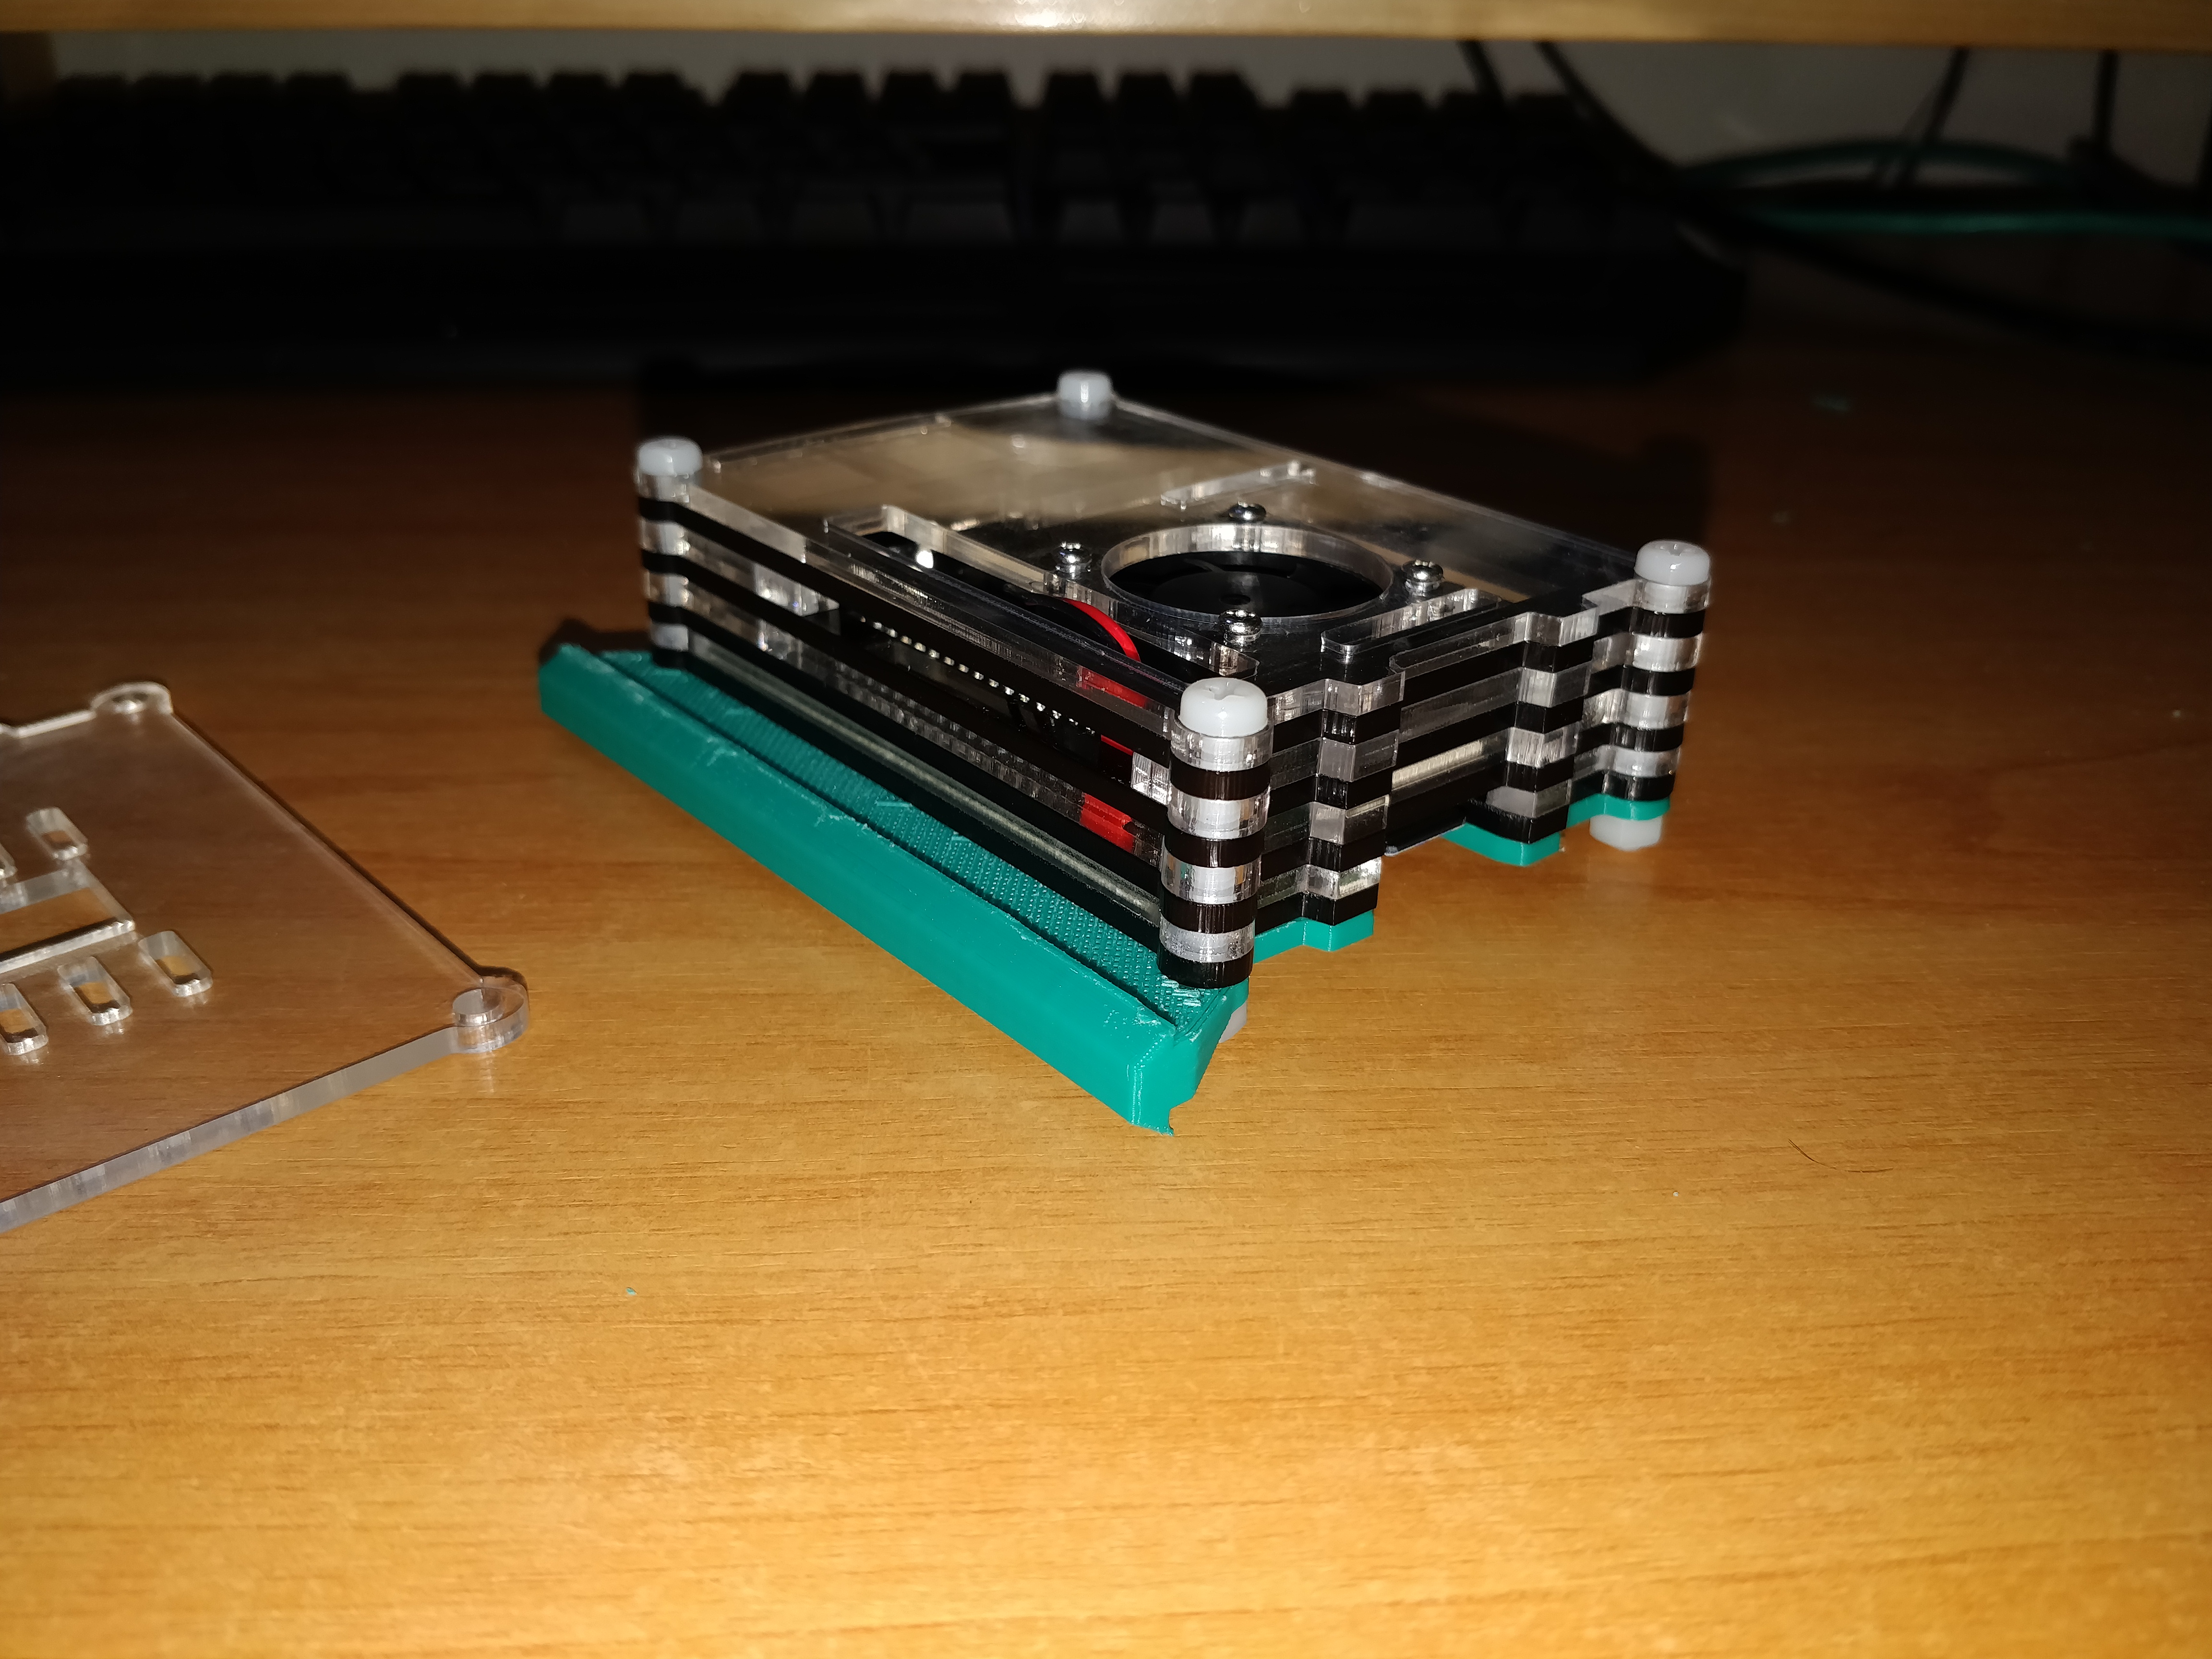 Raspberry Pi 3 Backplate for Ender 3